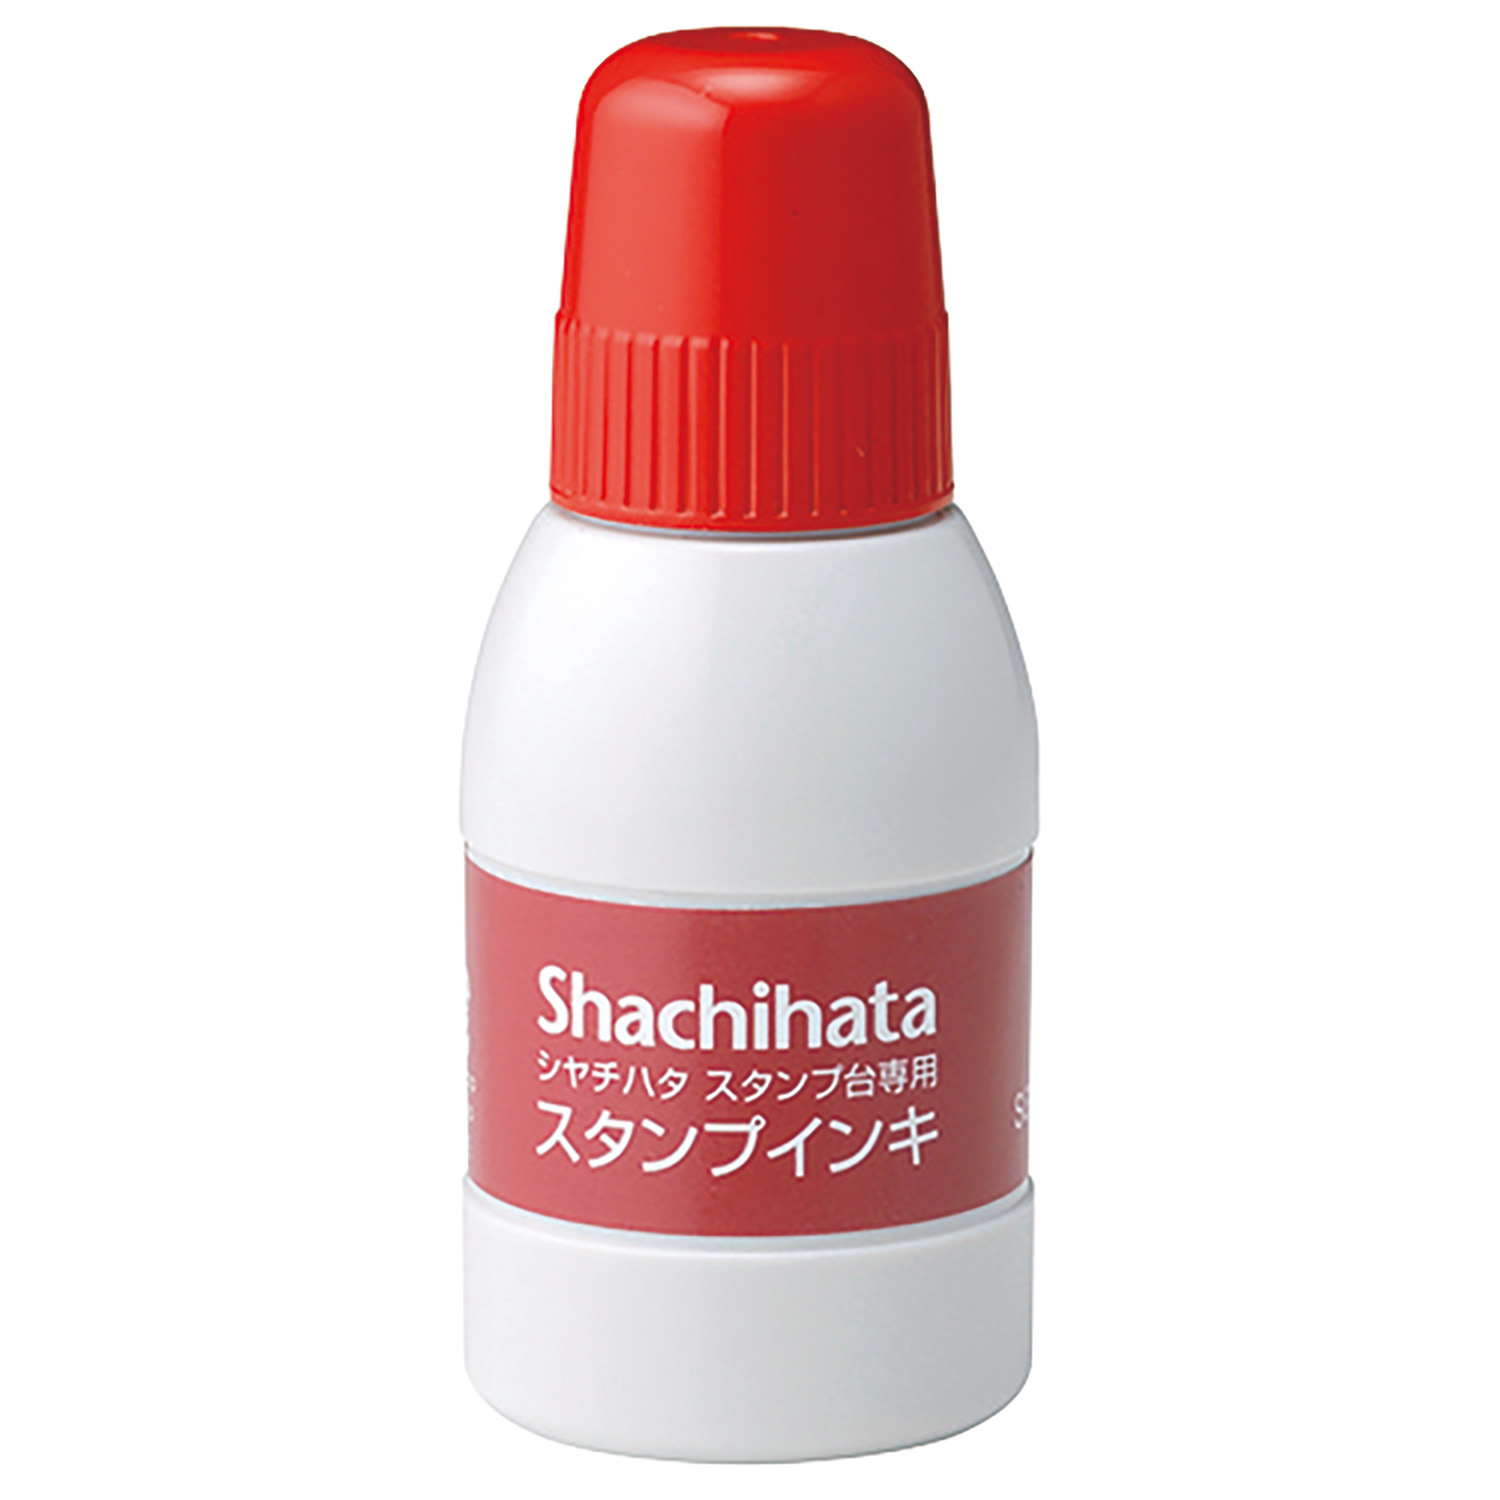 シヤチハタスタンプ台専用スタンプインキ 小瓶 赤